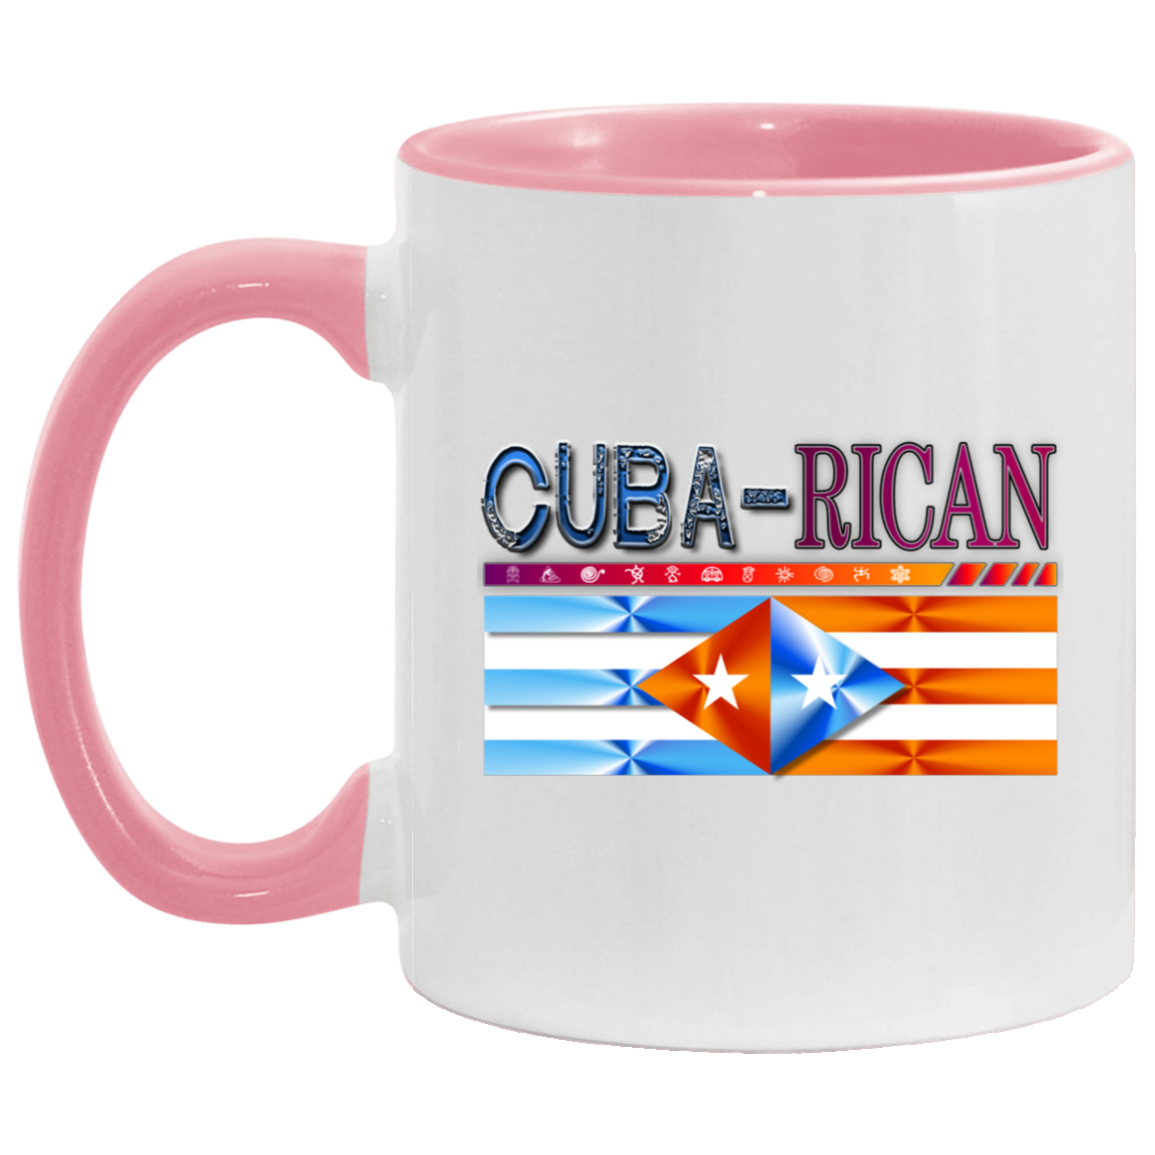 Cuba-Rican 11OZ Accent Mug - Puerto Rican Pride